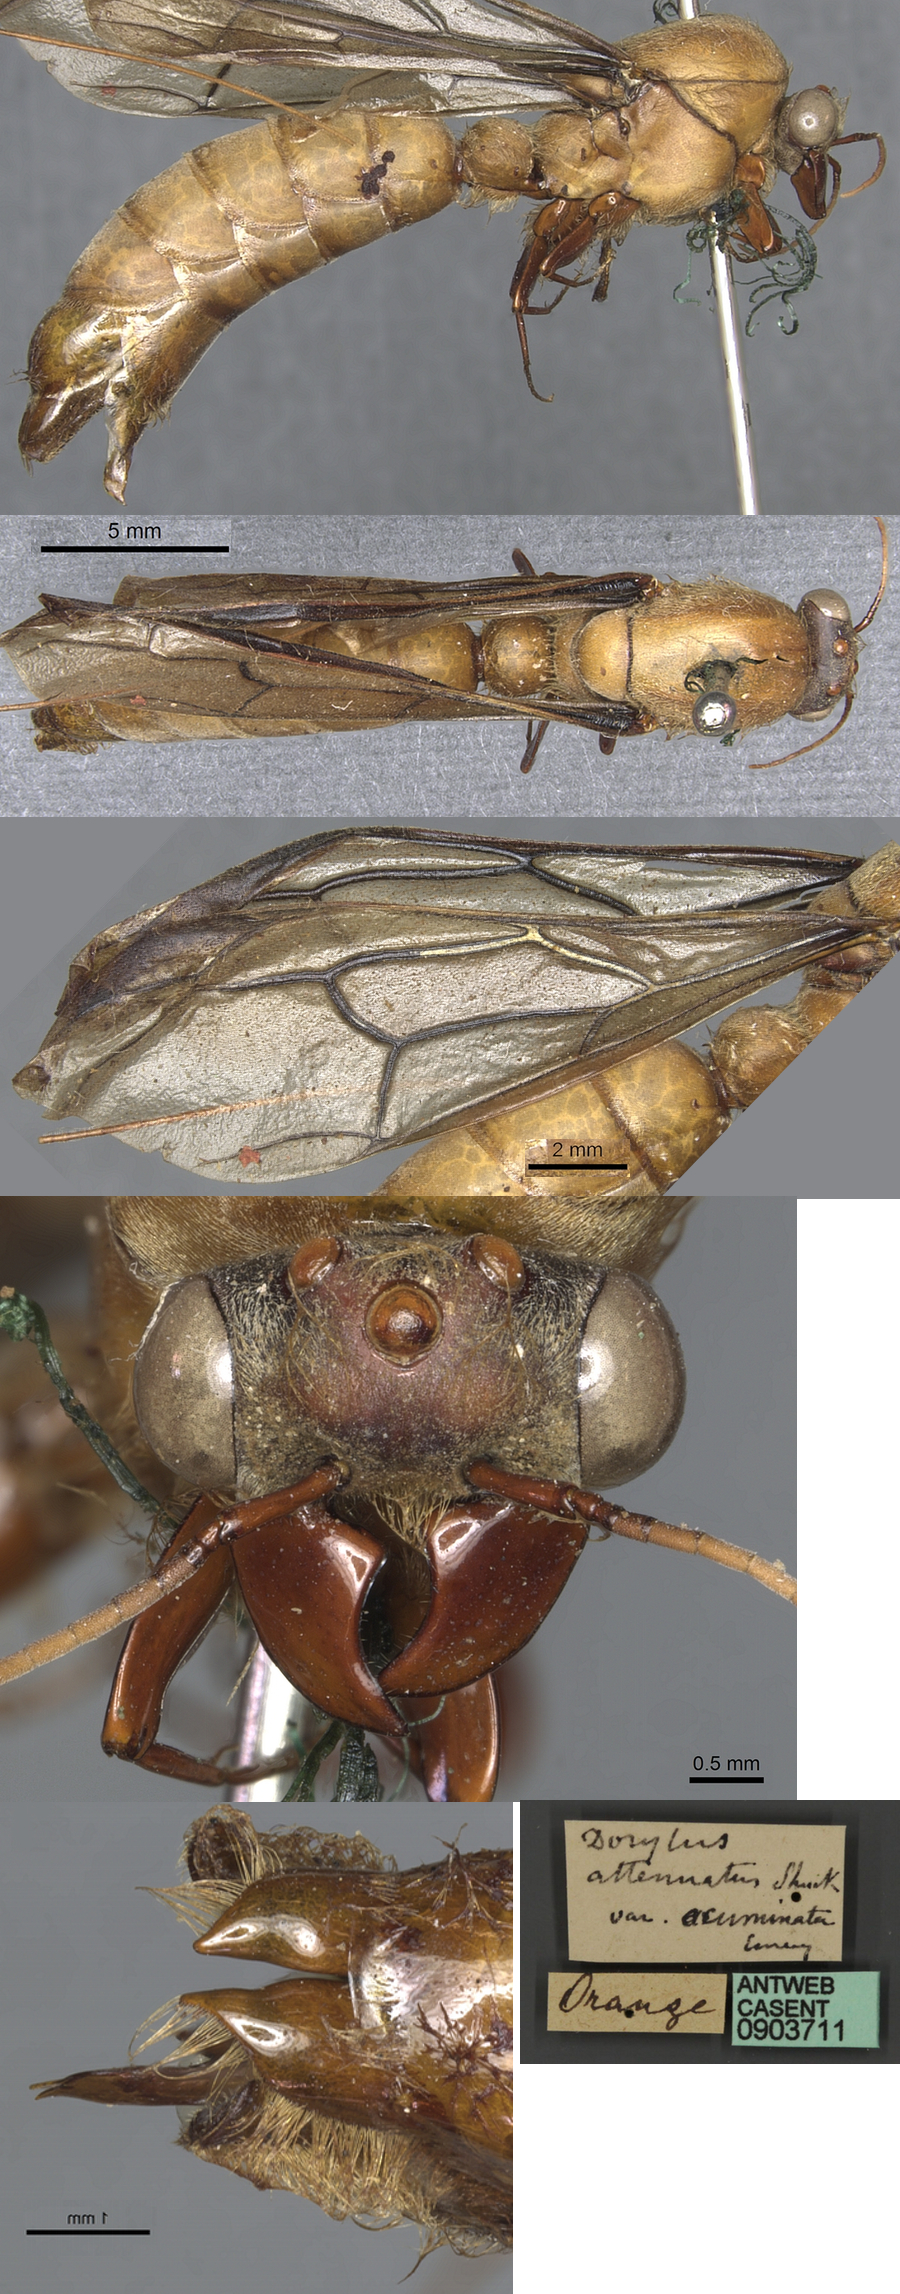 {Dorylus acuminata holotype male}